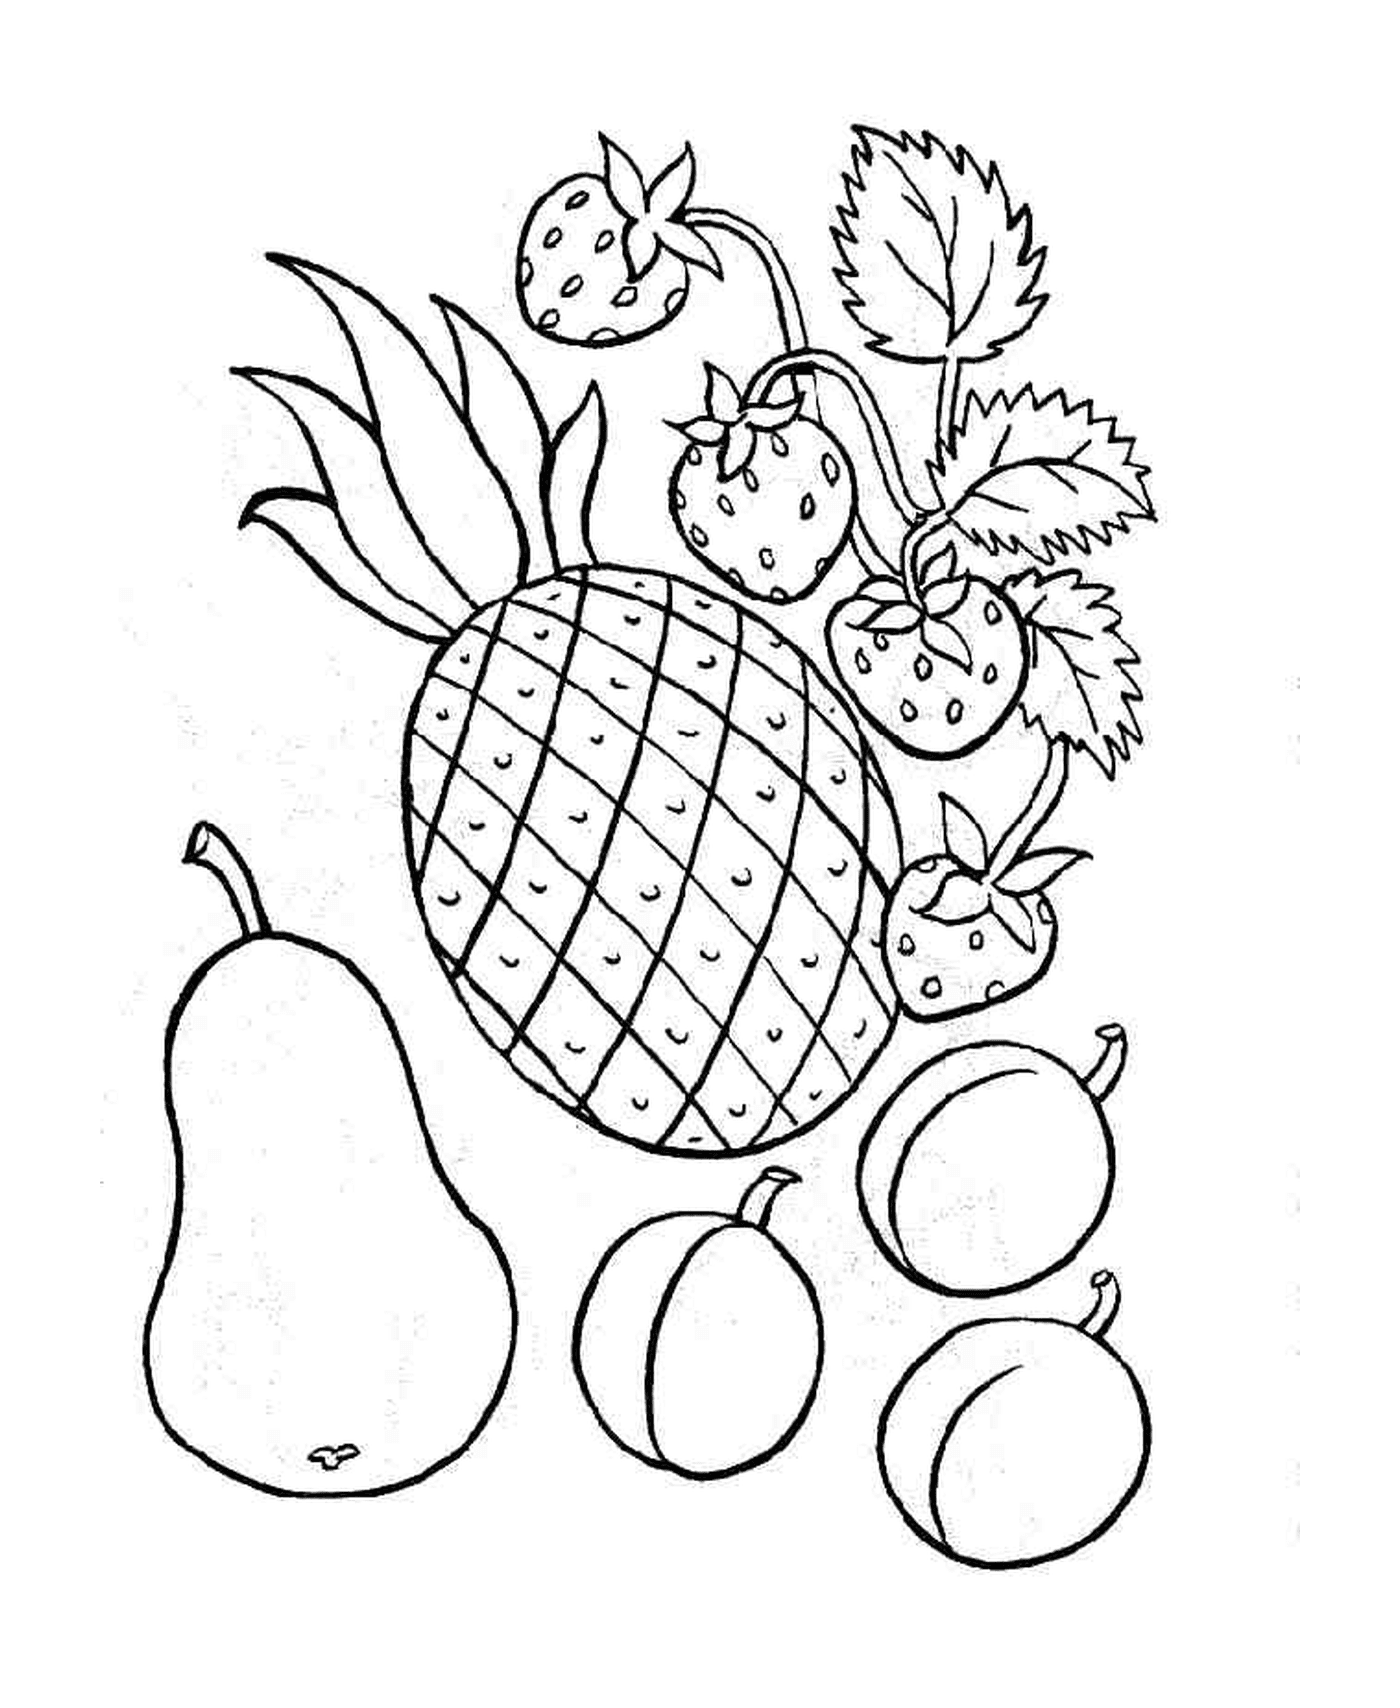  Ananas und andere Früchte 